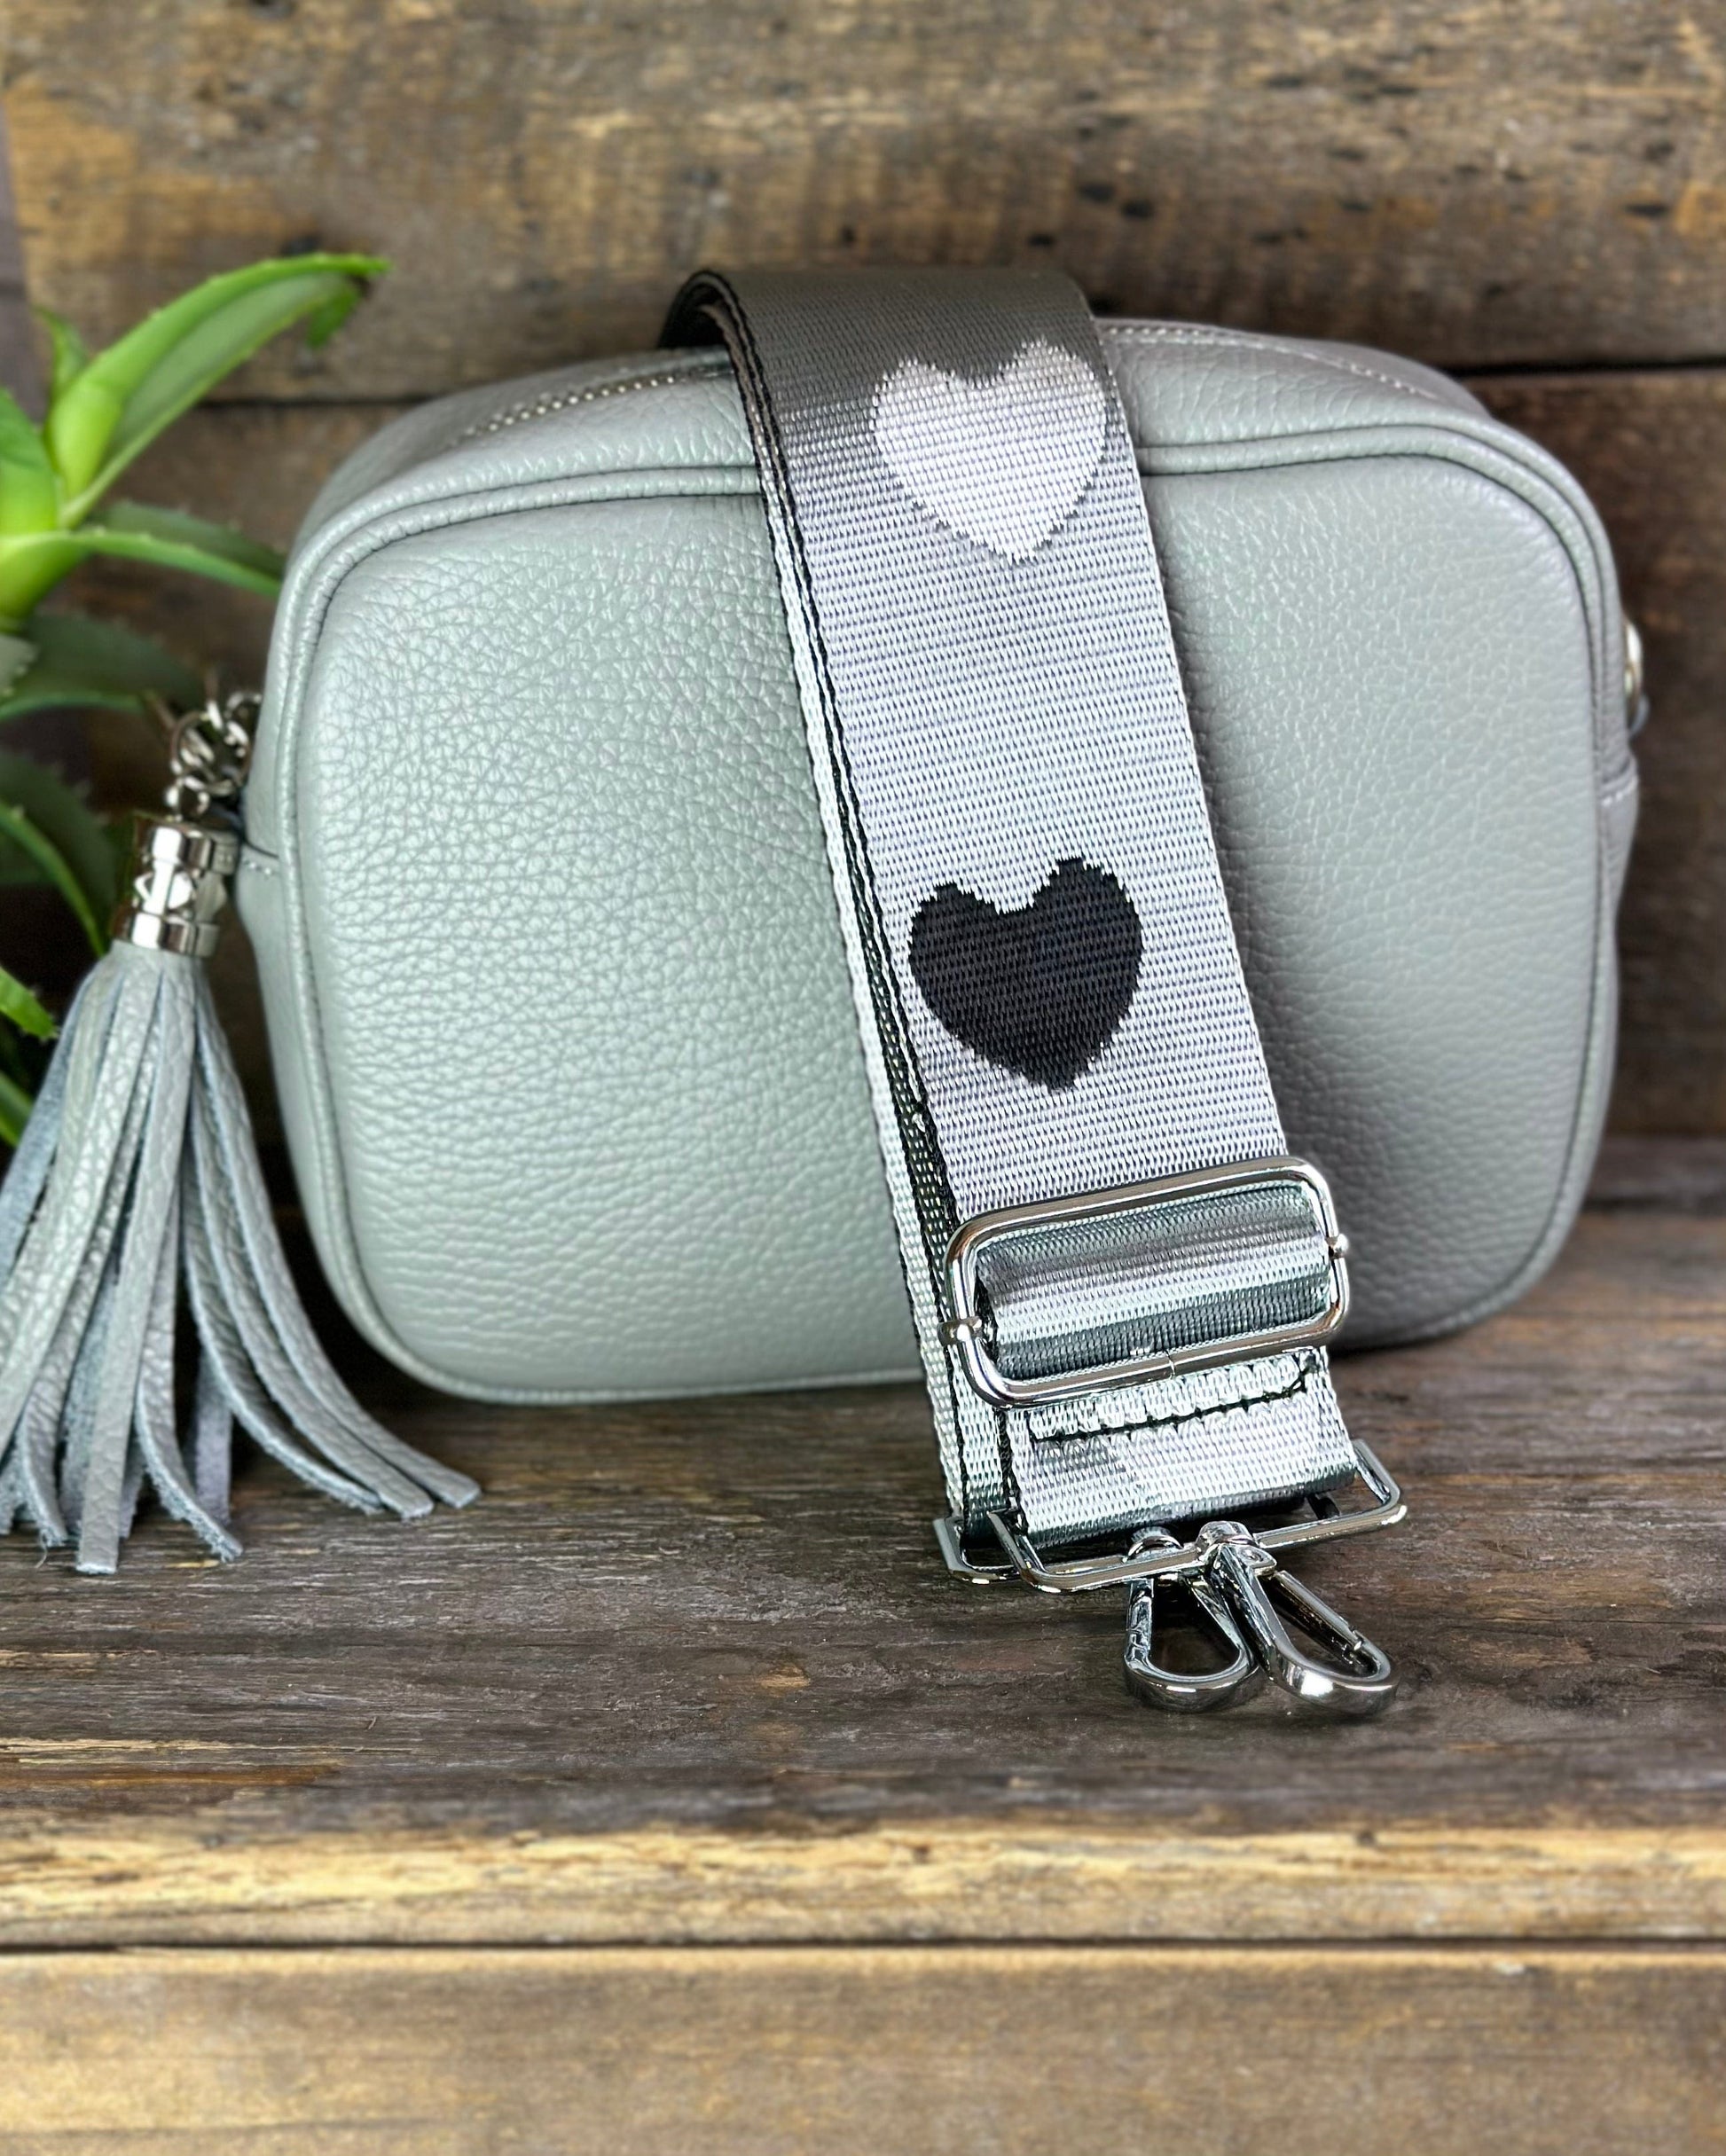 accessory Bag Strap - Silver, White & Black Hearts Print